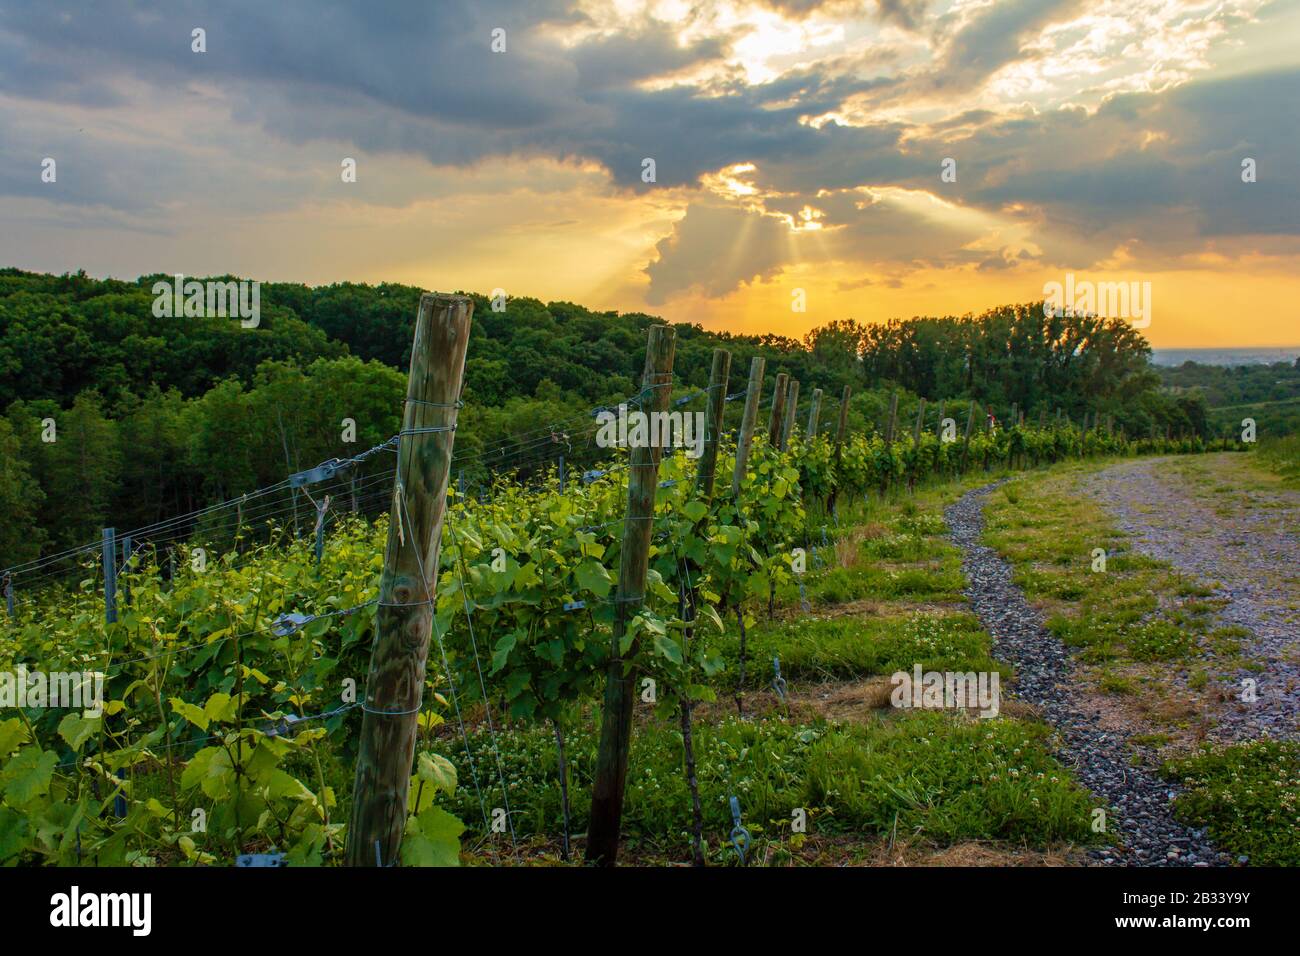 belle vue sur les vignobles de la forêt noire d'offenburg en allemagne Banque D'Images